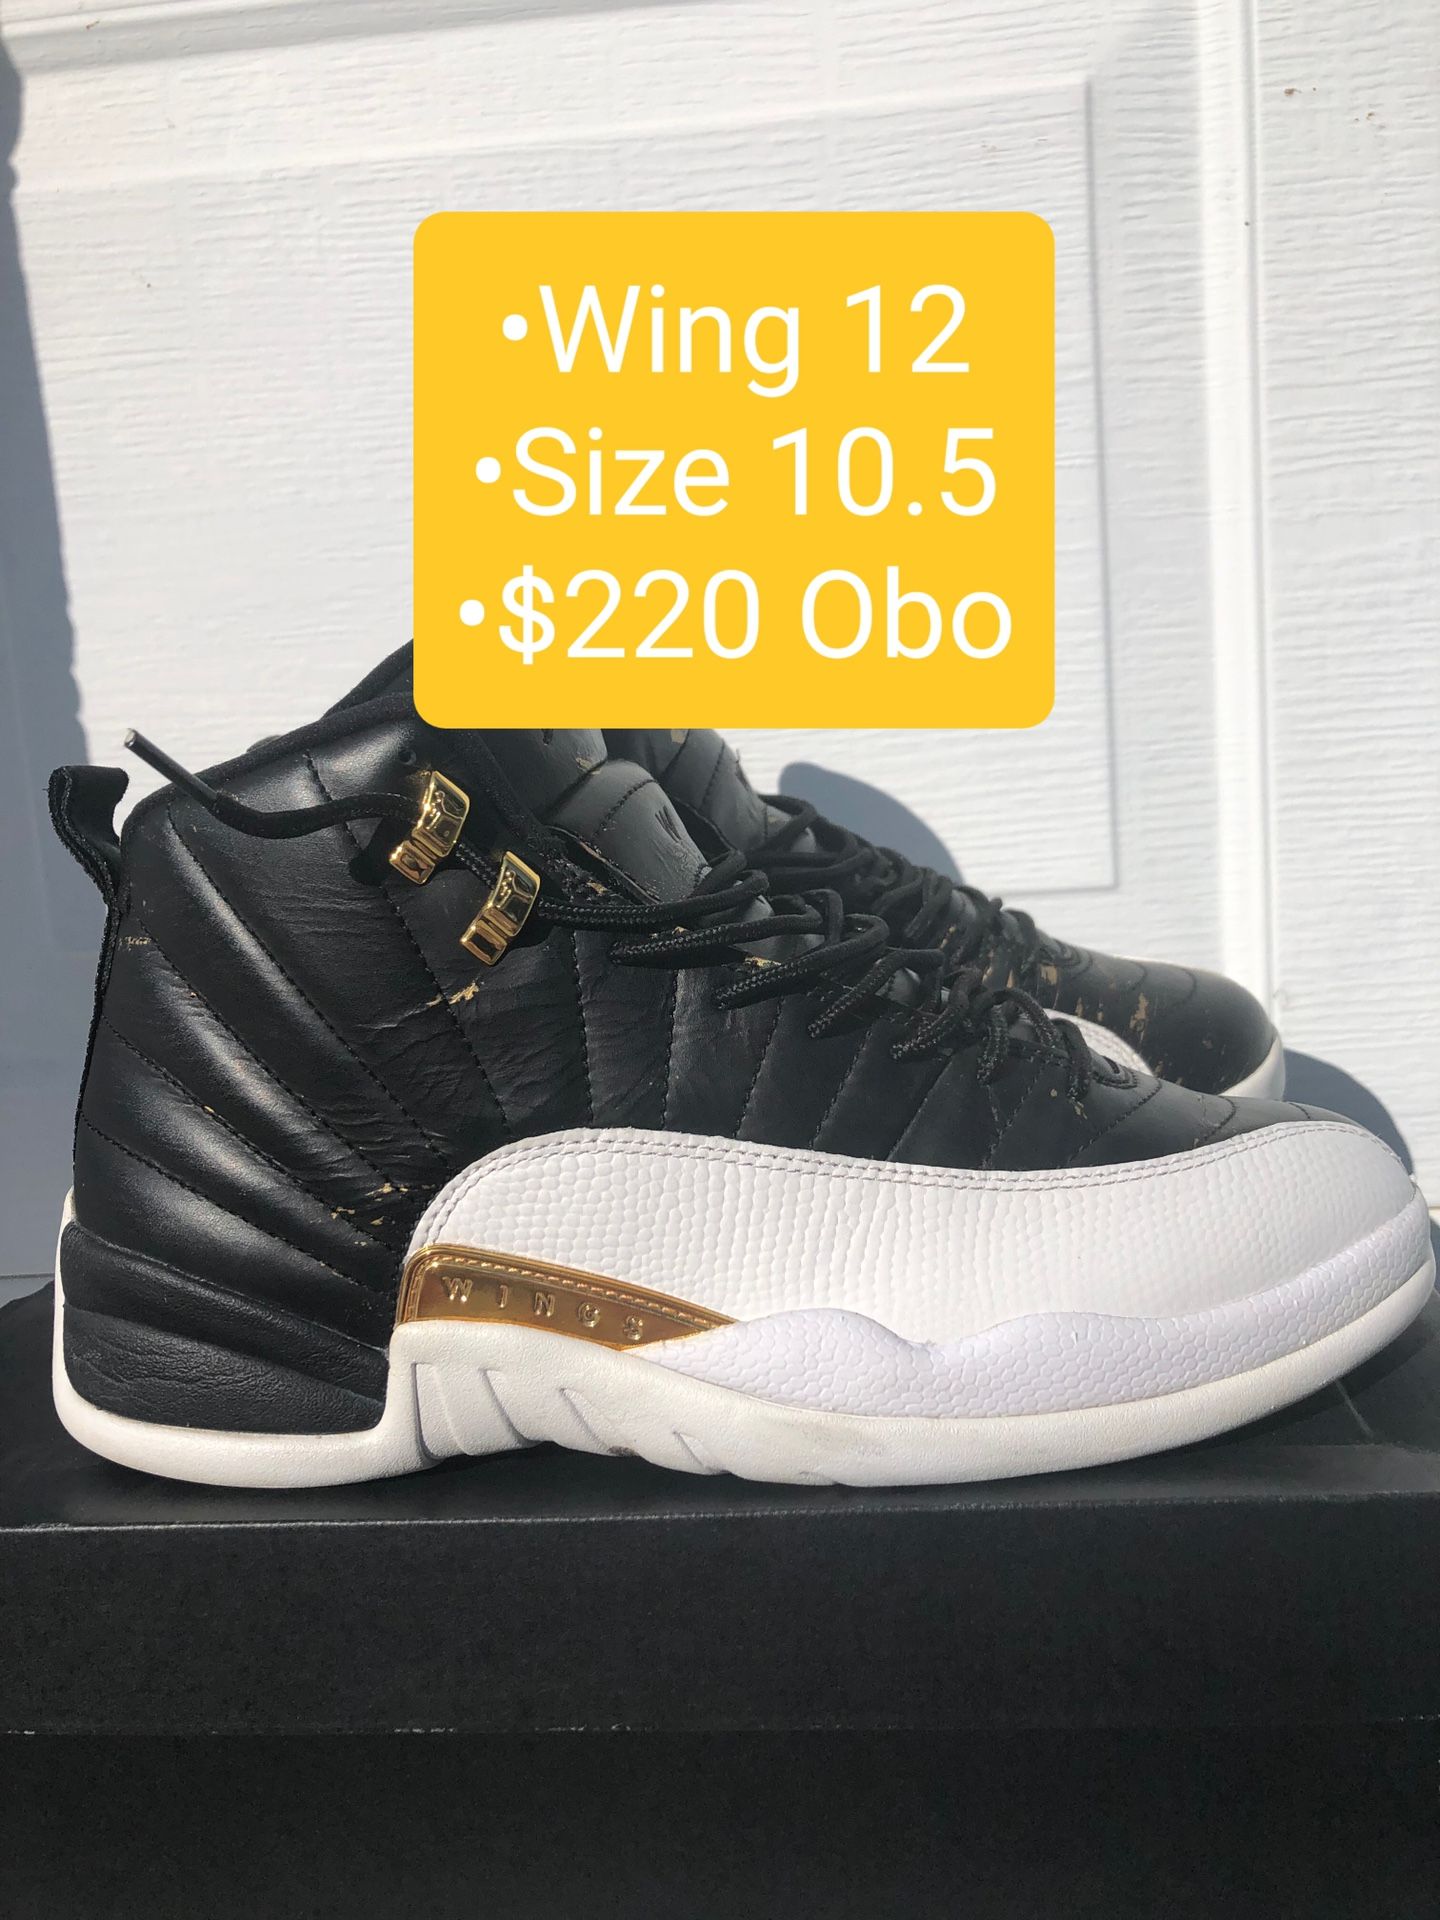 Mens Nike Air Jordan Retro 12 "Wings" Size 10.5 $220 Obo